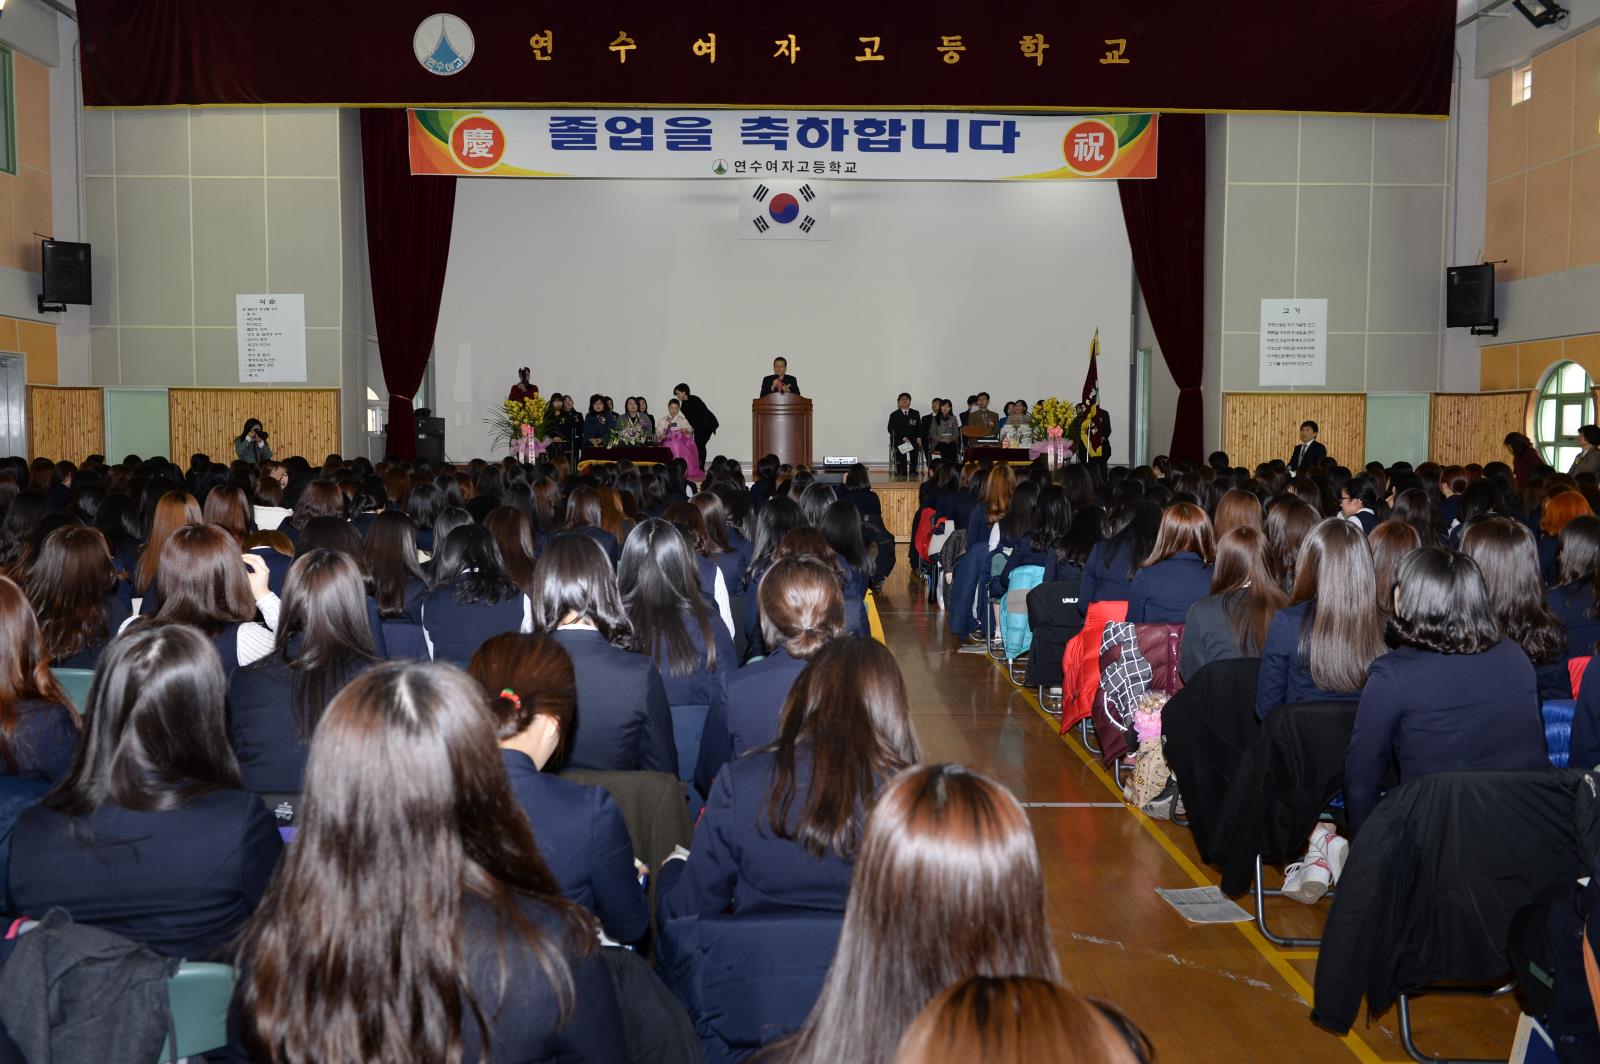 연수여자고등학교 졸업식 참석의 2번째 이미지